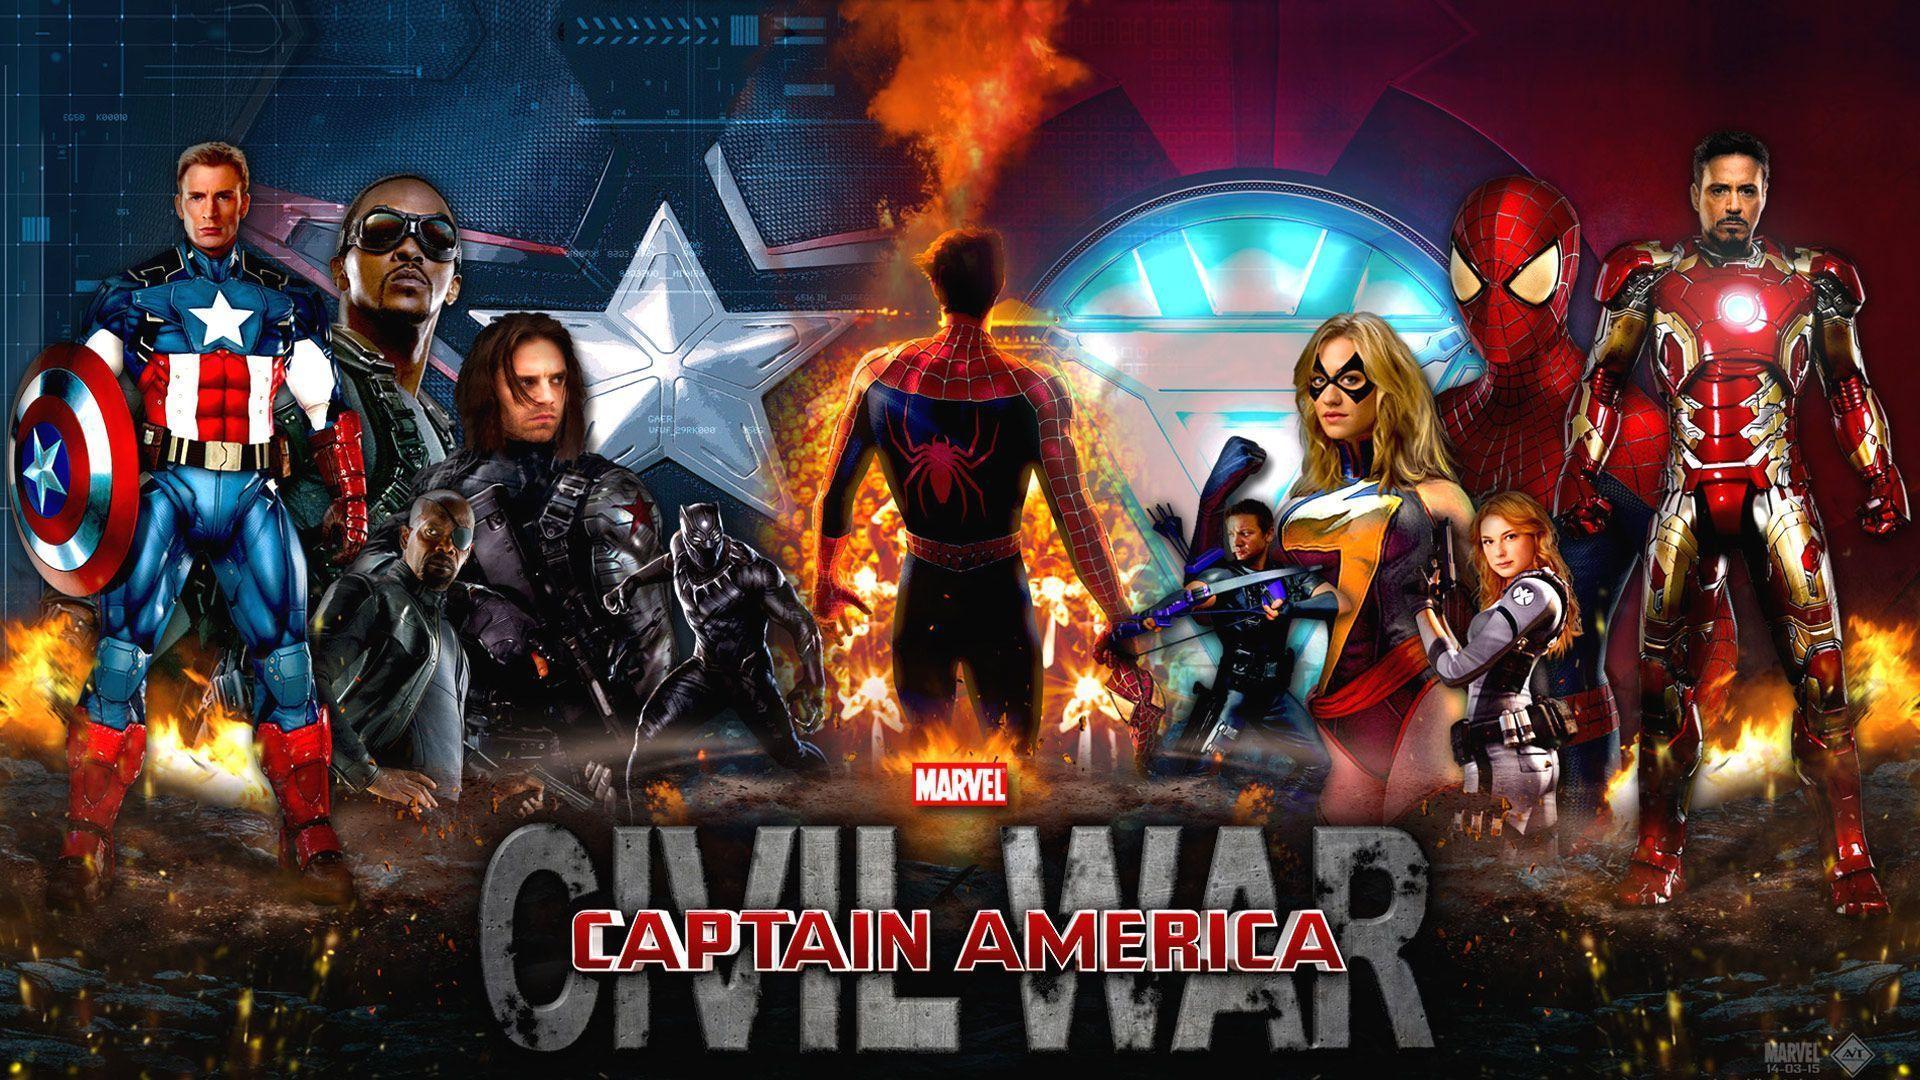 Captain America Civil War wallpaper